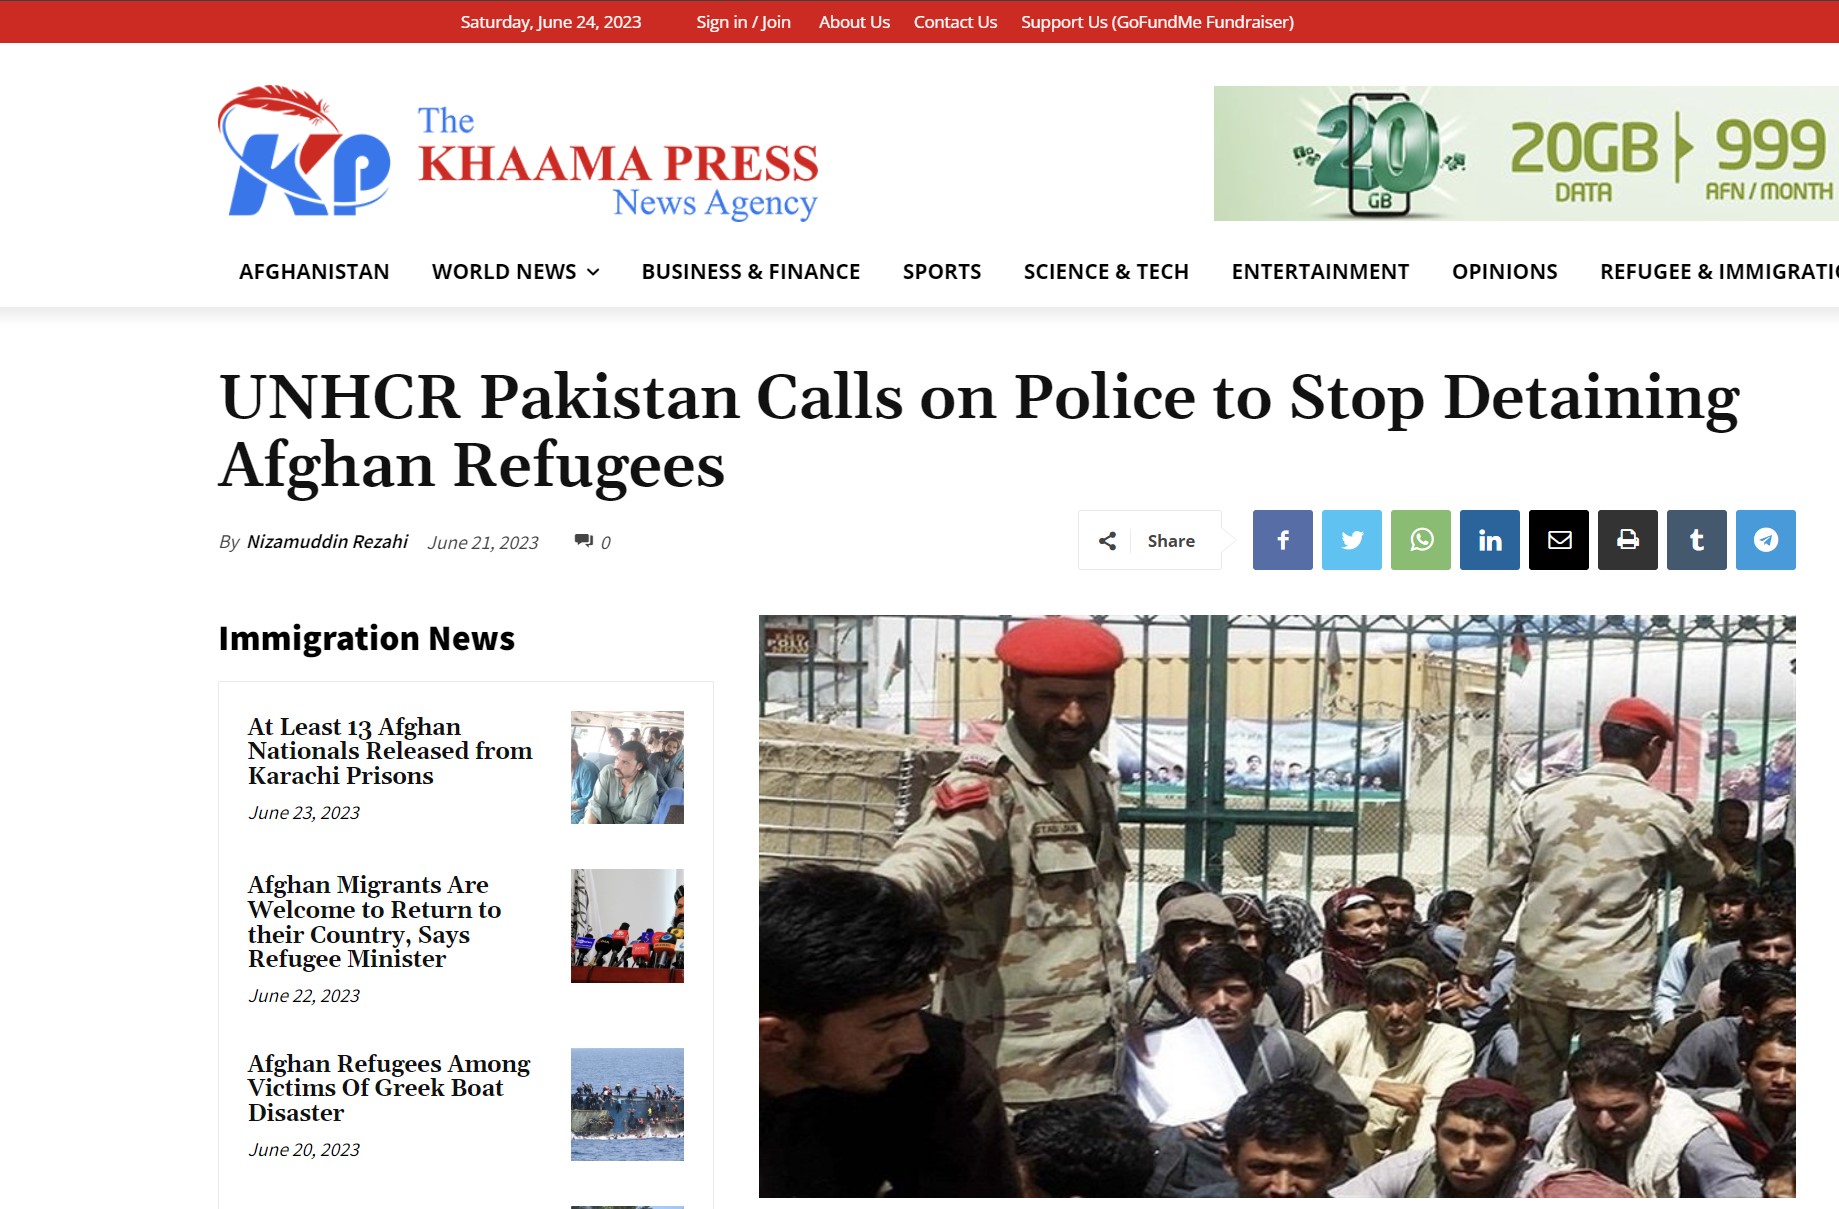 Παρατηρήσεις από την Ύπατη Αρμοστεία του ΟΗΕ στο Πακιστάν για ανάρμοστη συμπεριφορά σε Αφγανούς πρόσφυγες